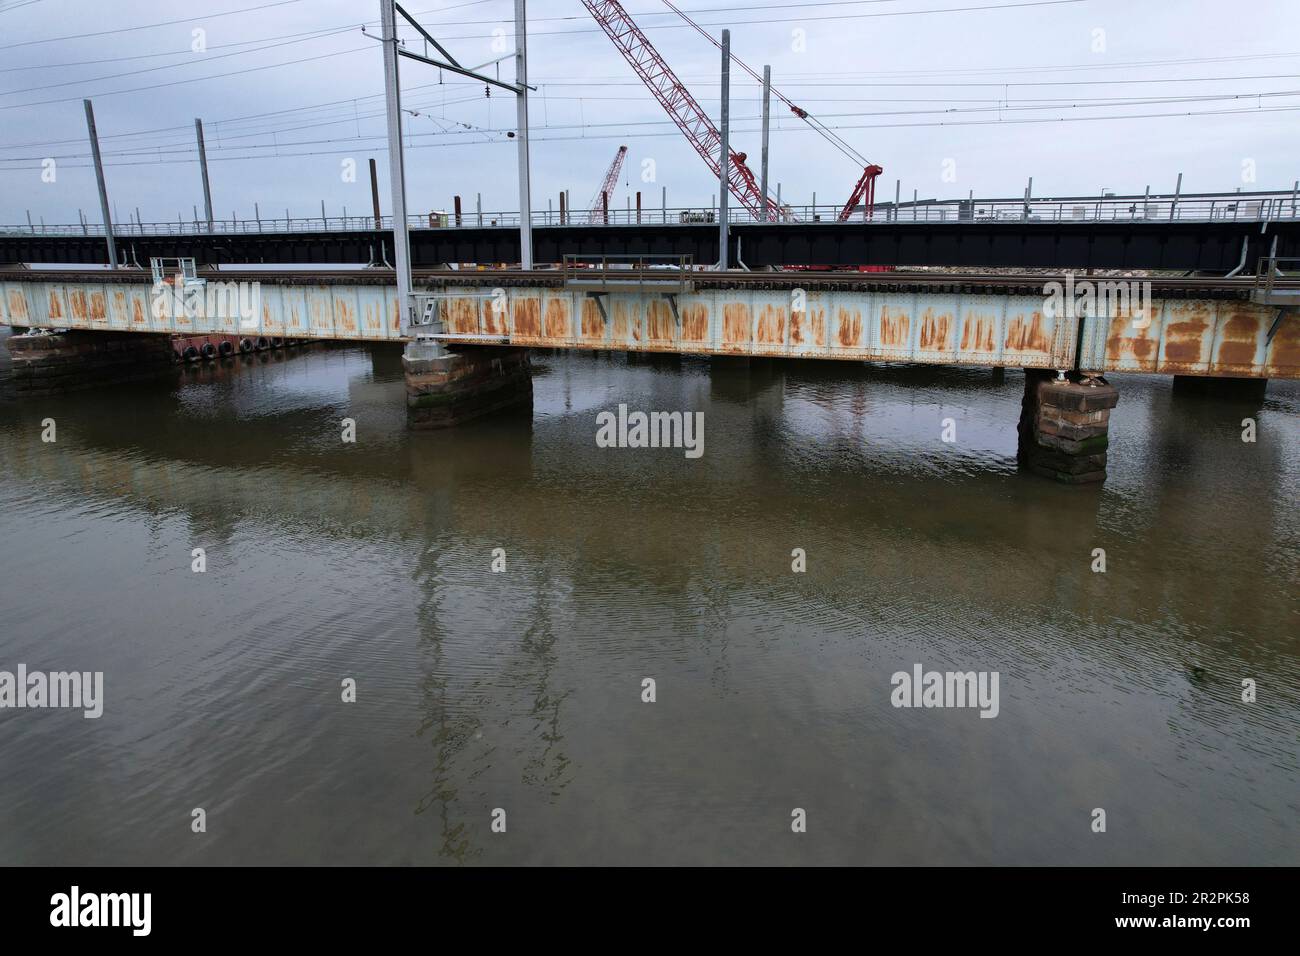 Vista aérea del puente River Draw en Perth Amboy, NJ con el nuevo puente siendo construido en el fondo Foto de stock